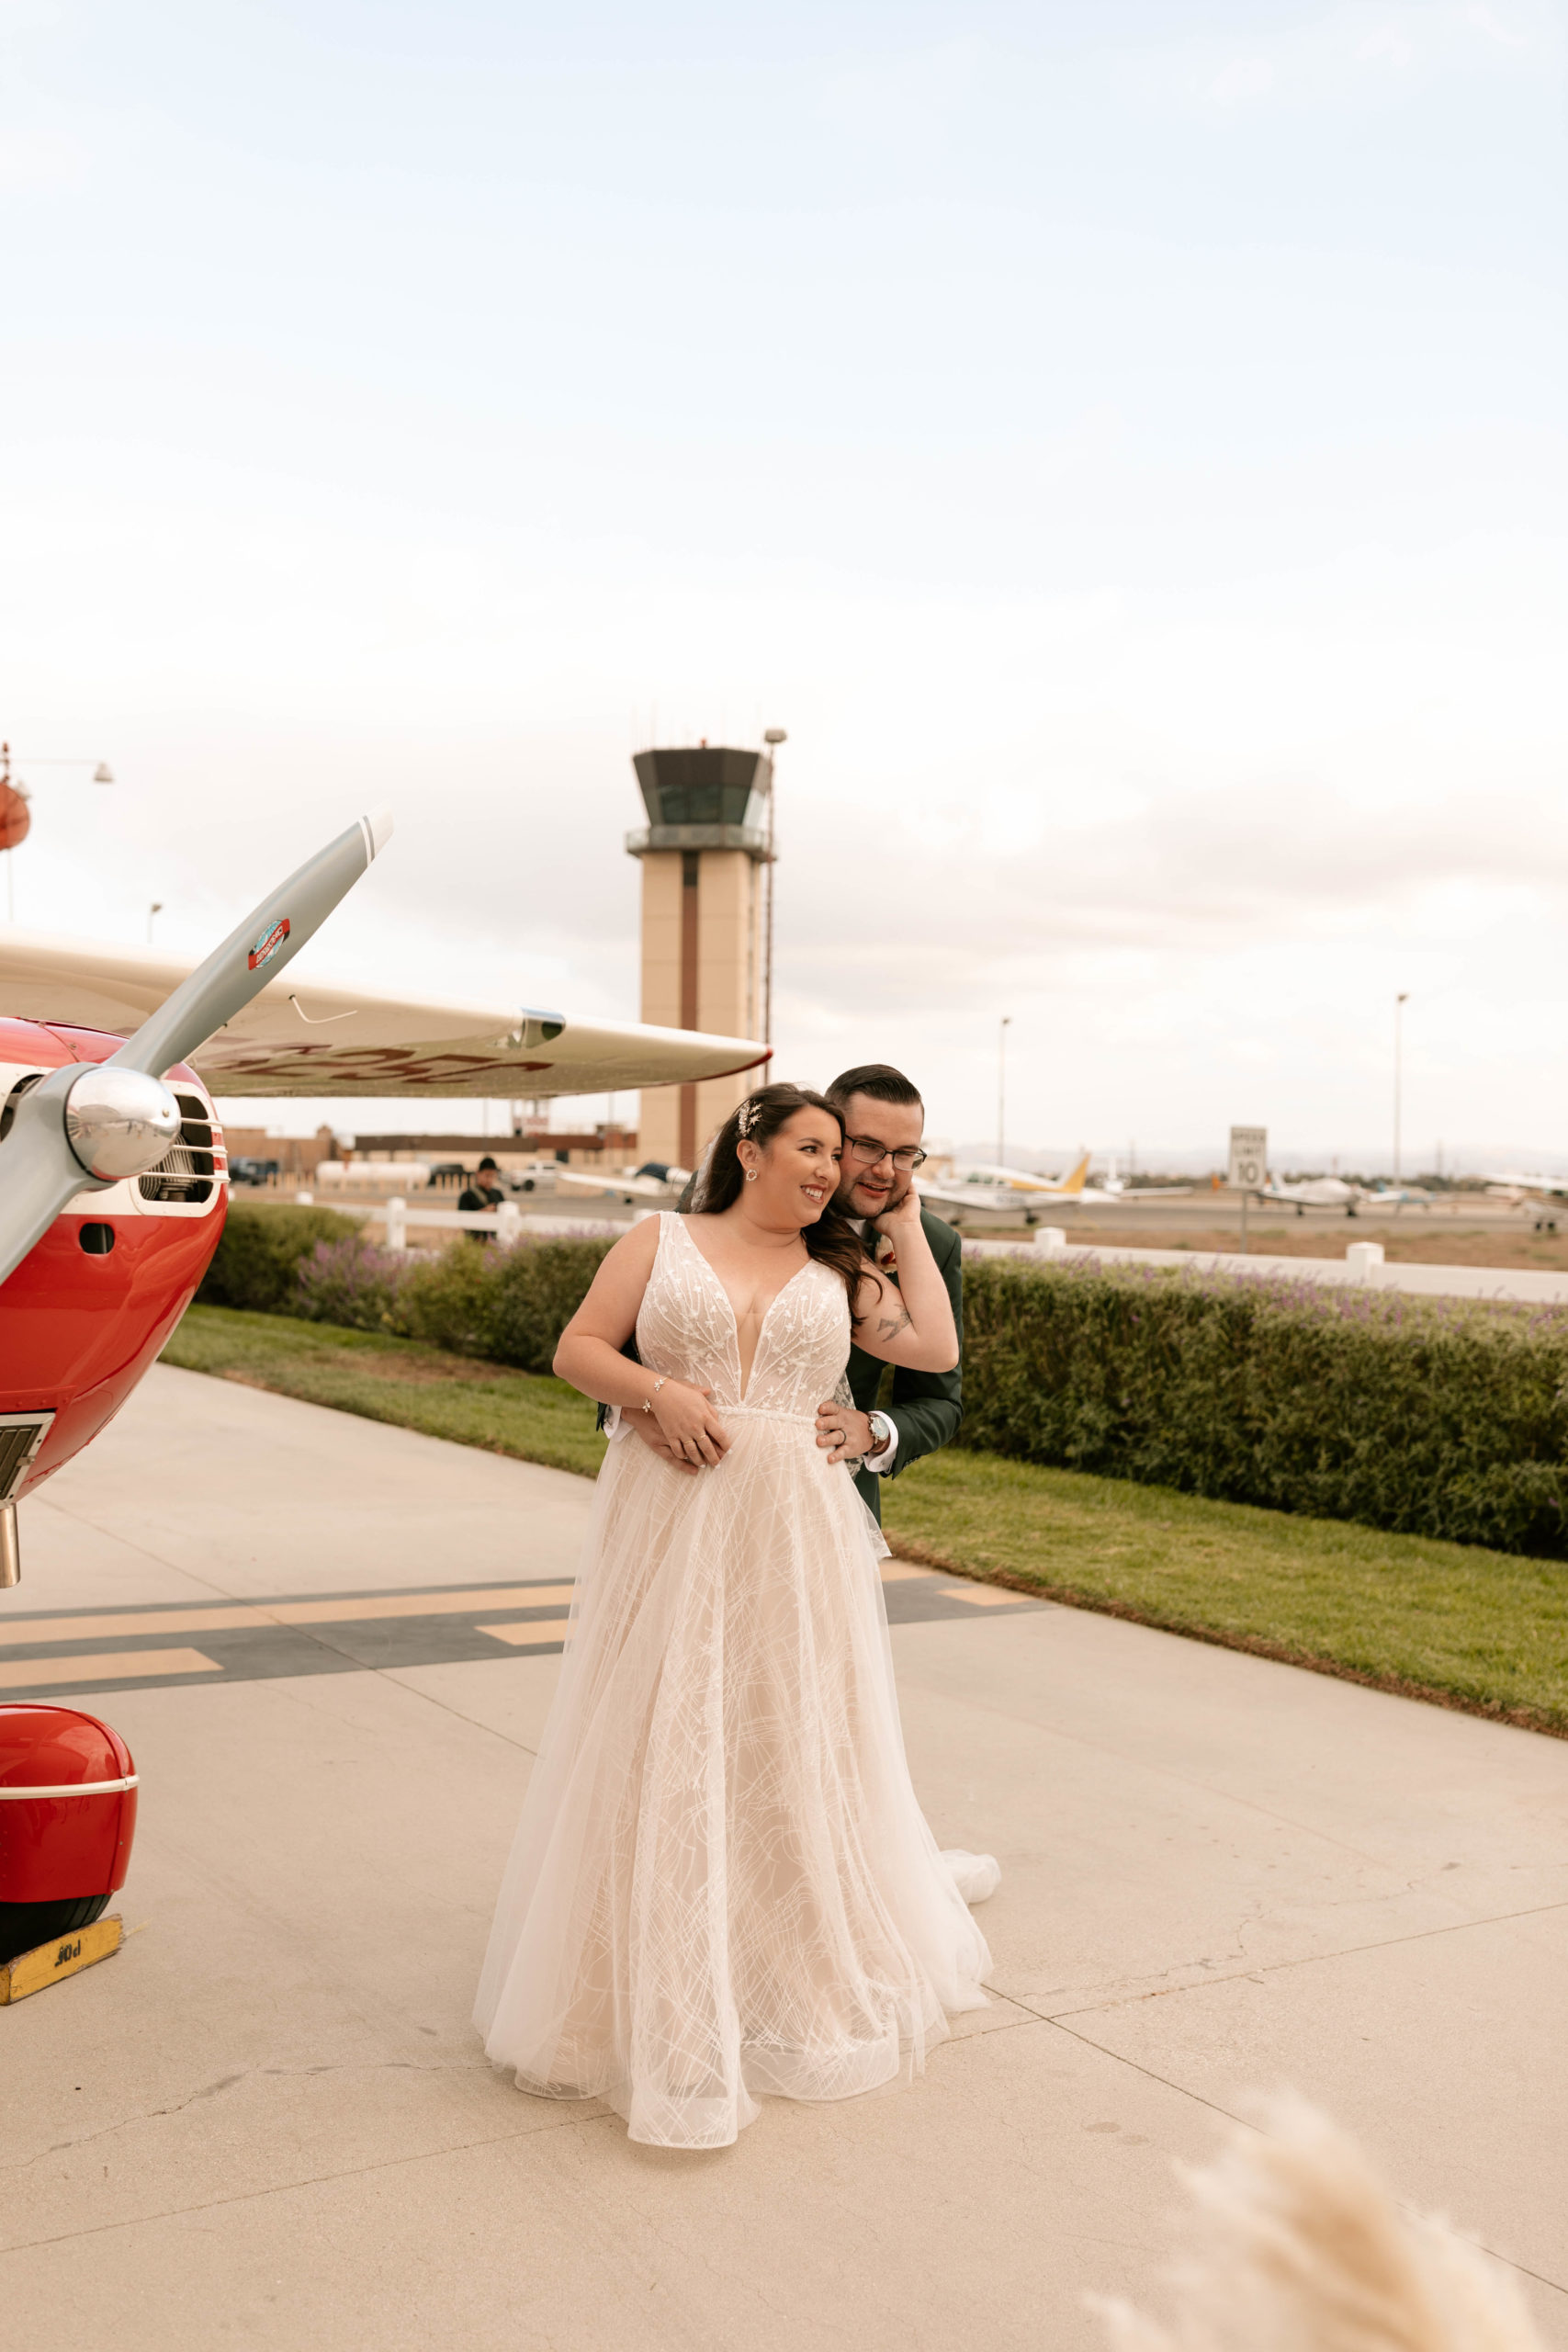 Chino airport wedding